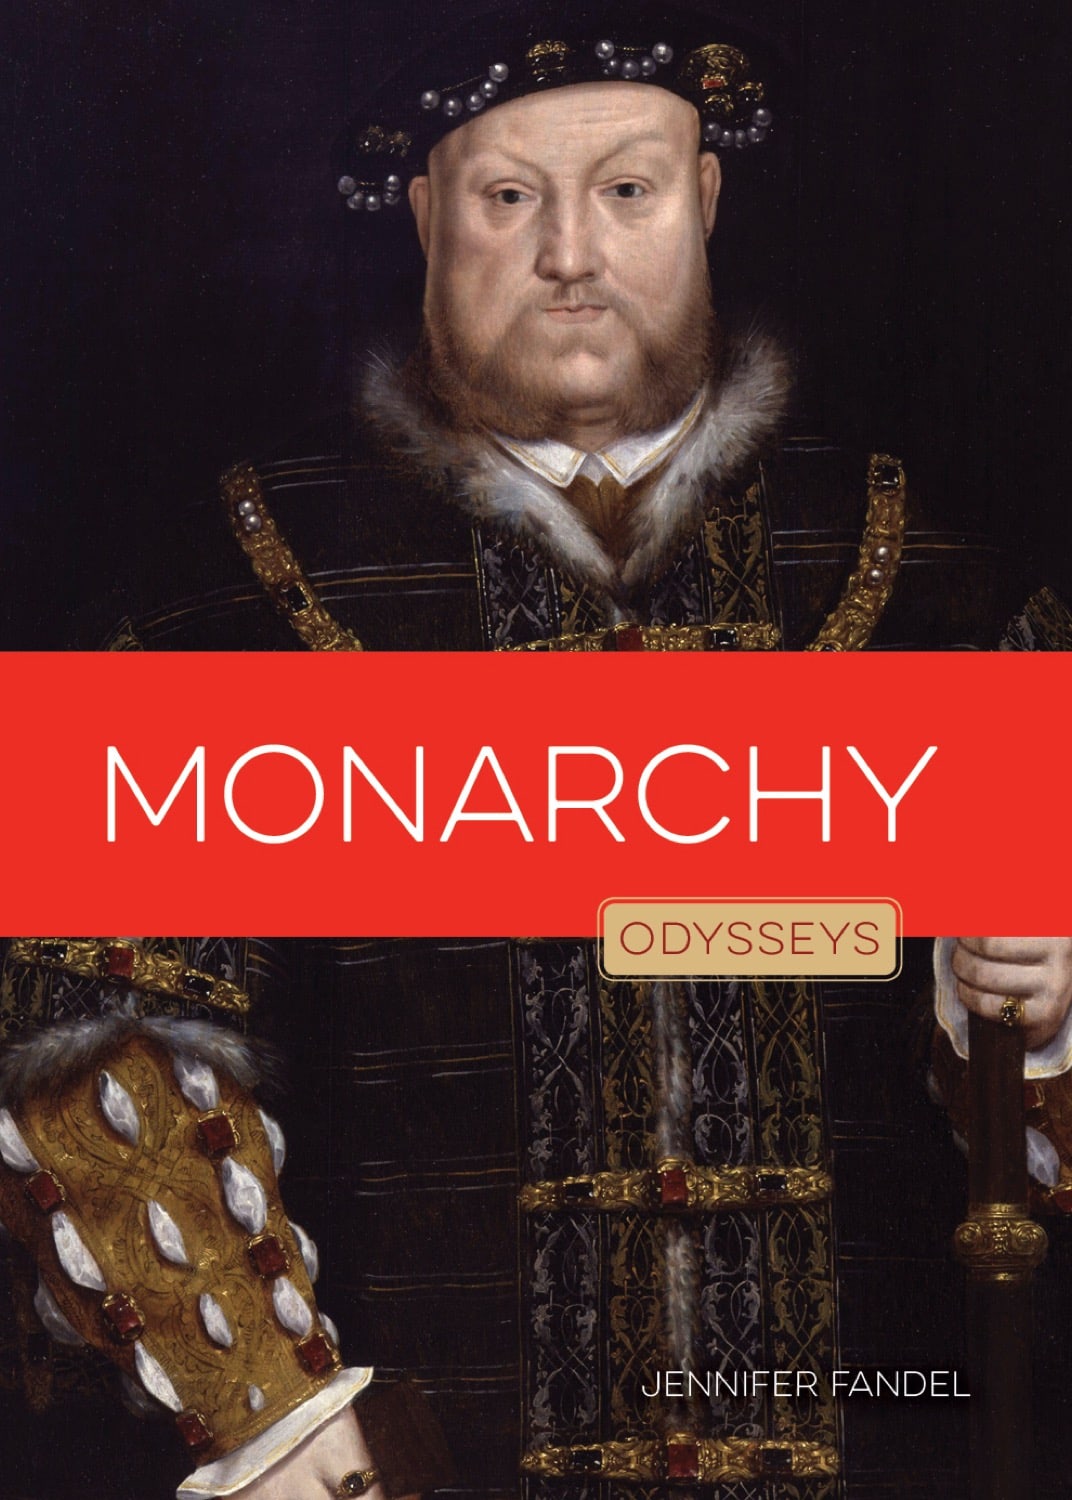 Odysseen in der Regierung: Monarchie